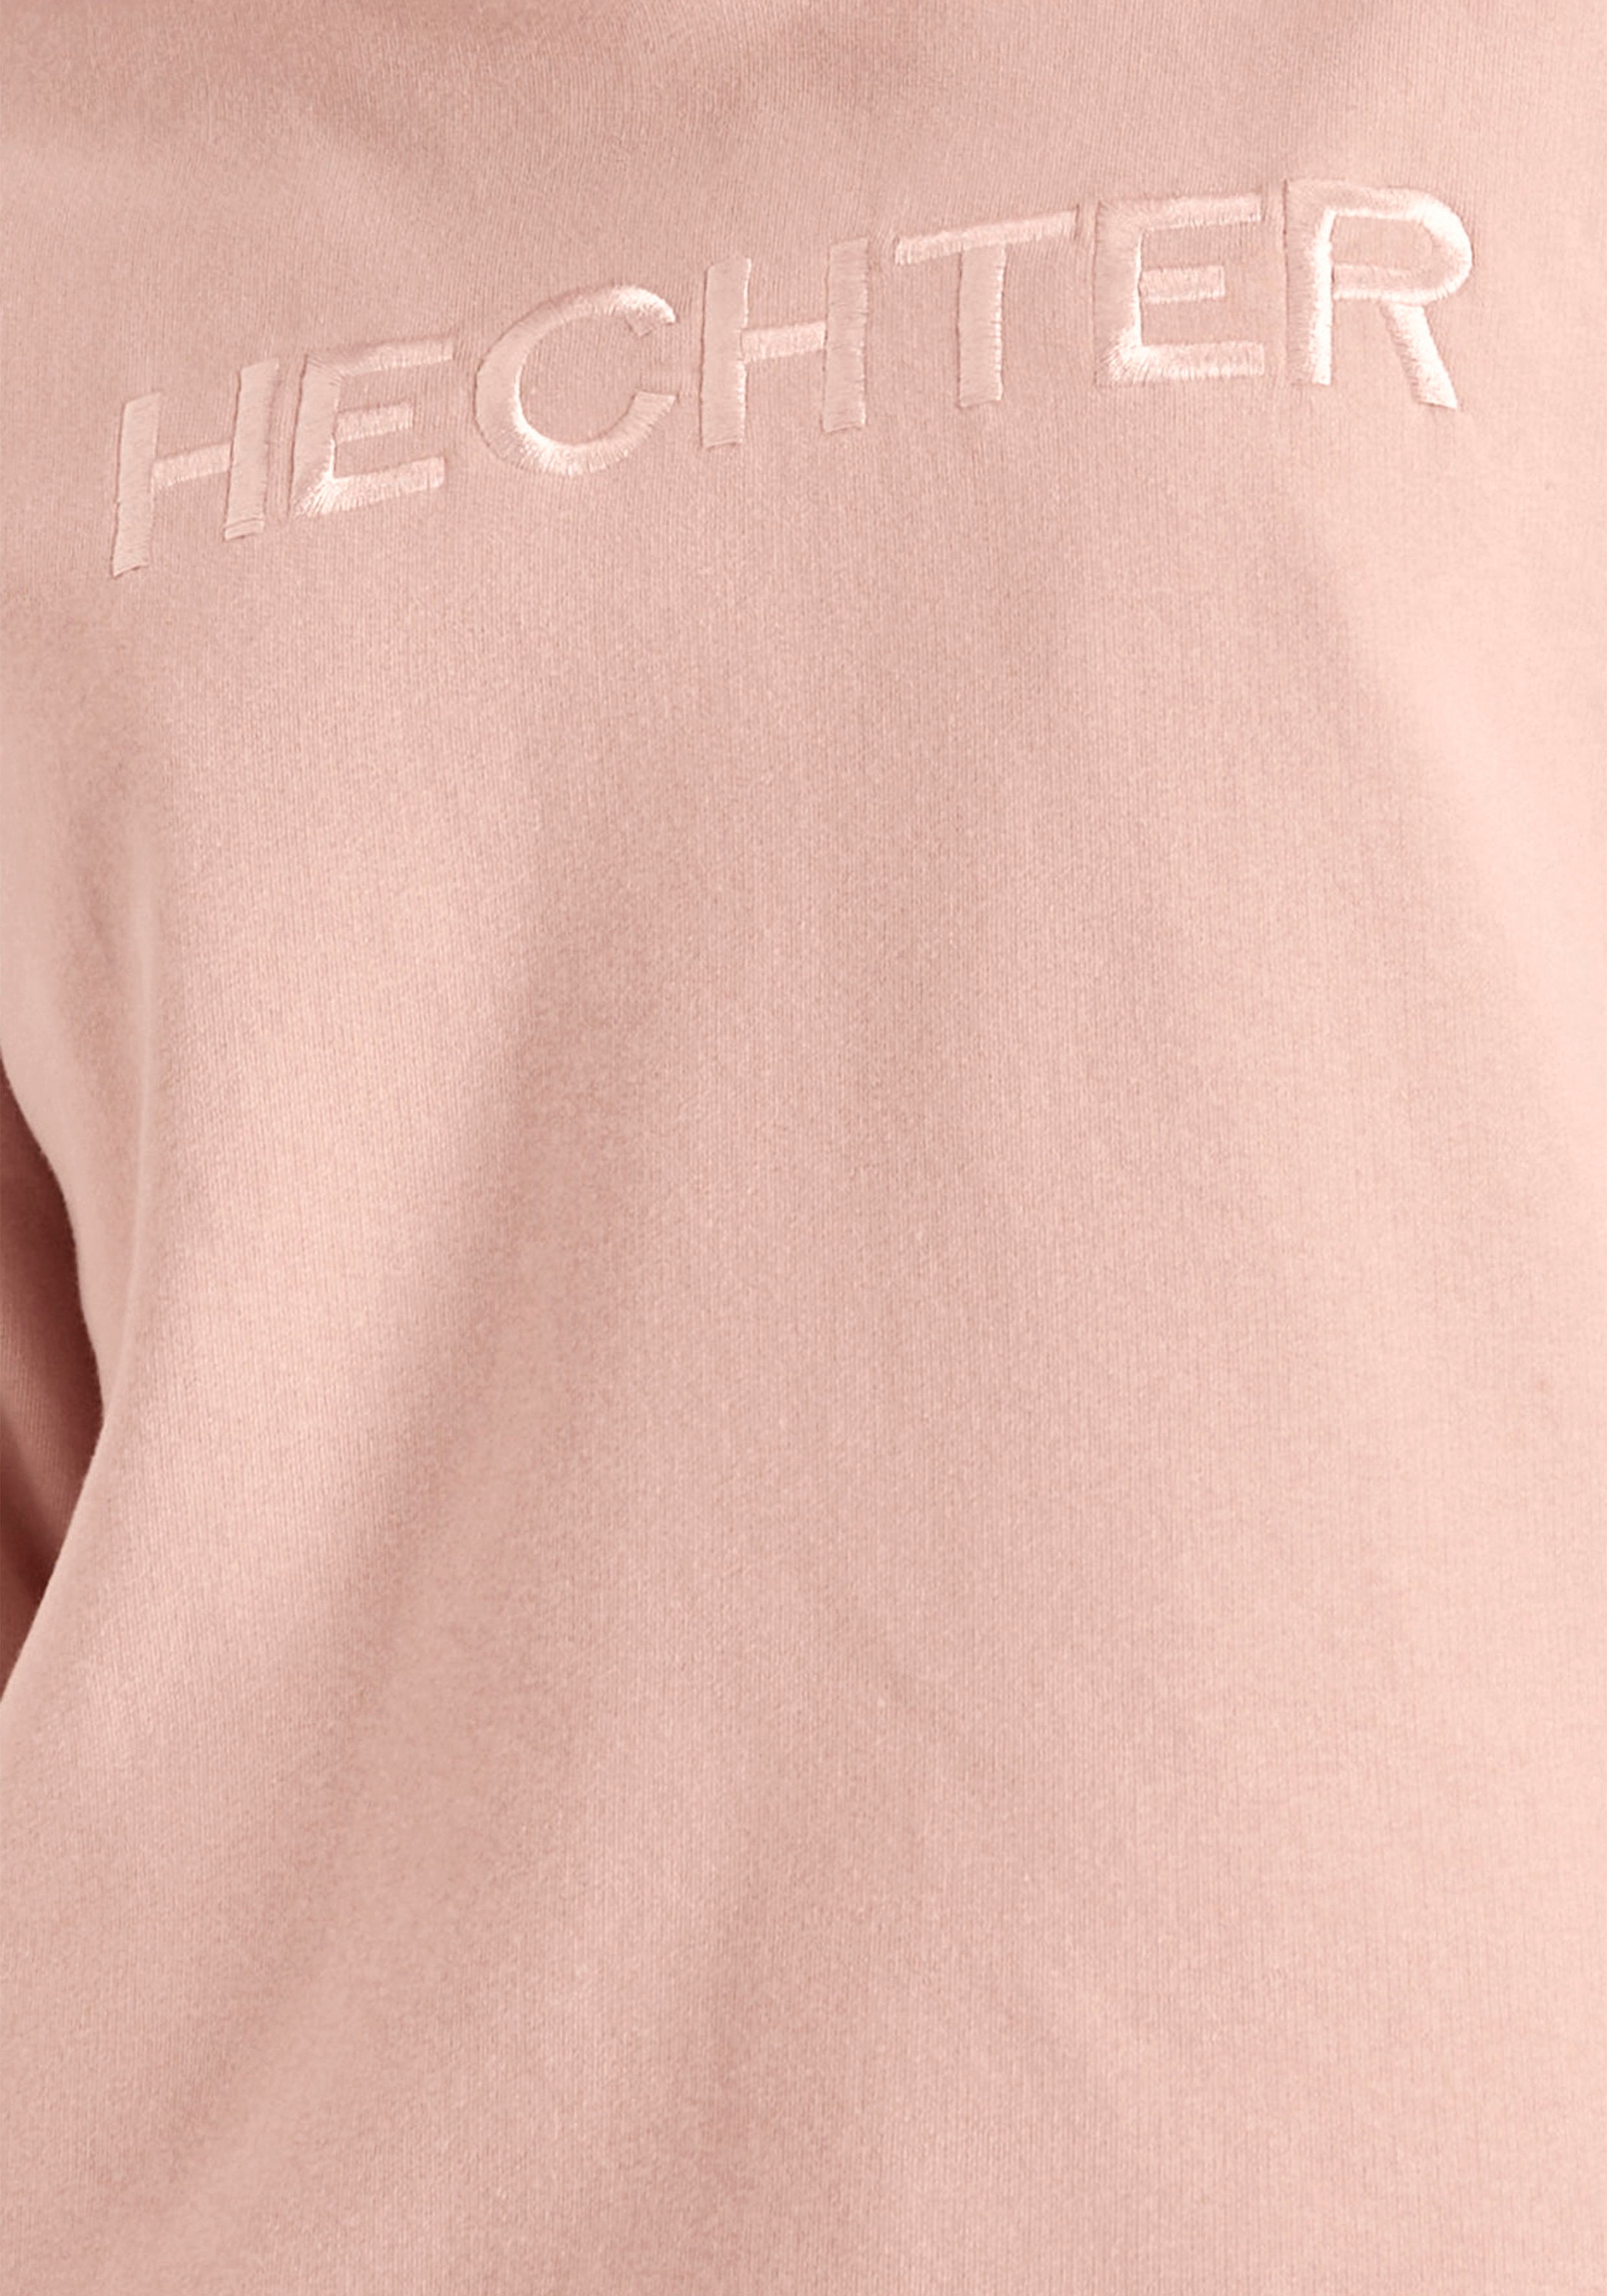 HECHTER PARIS Kapuzensweatshirt, mit Markenstickerei für bestellen | BAUR